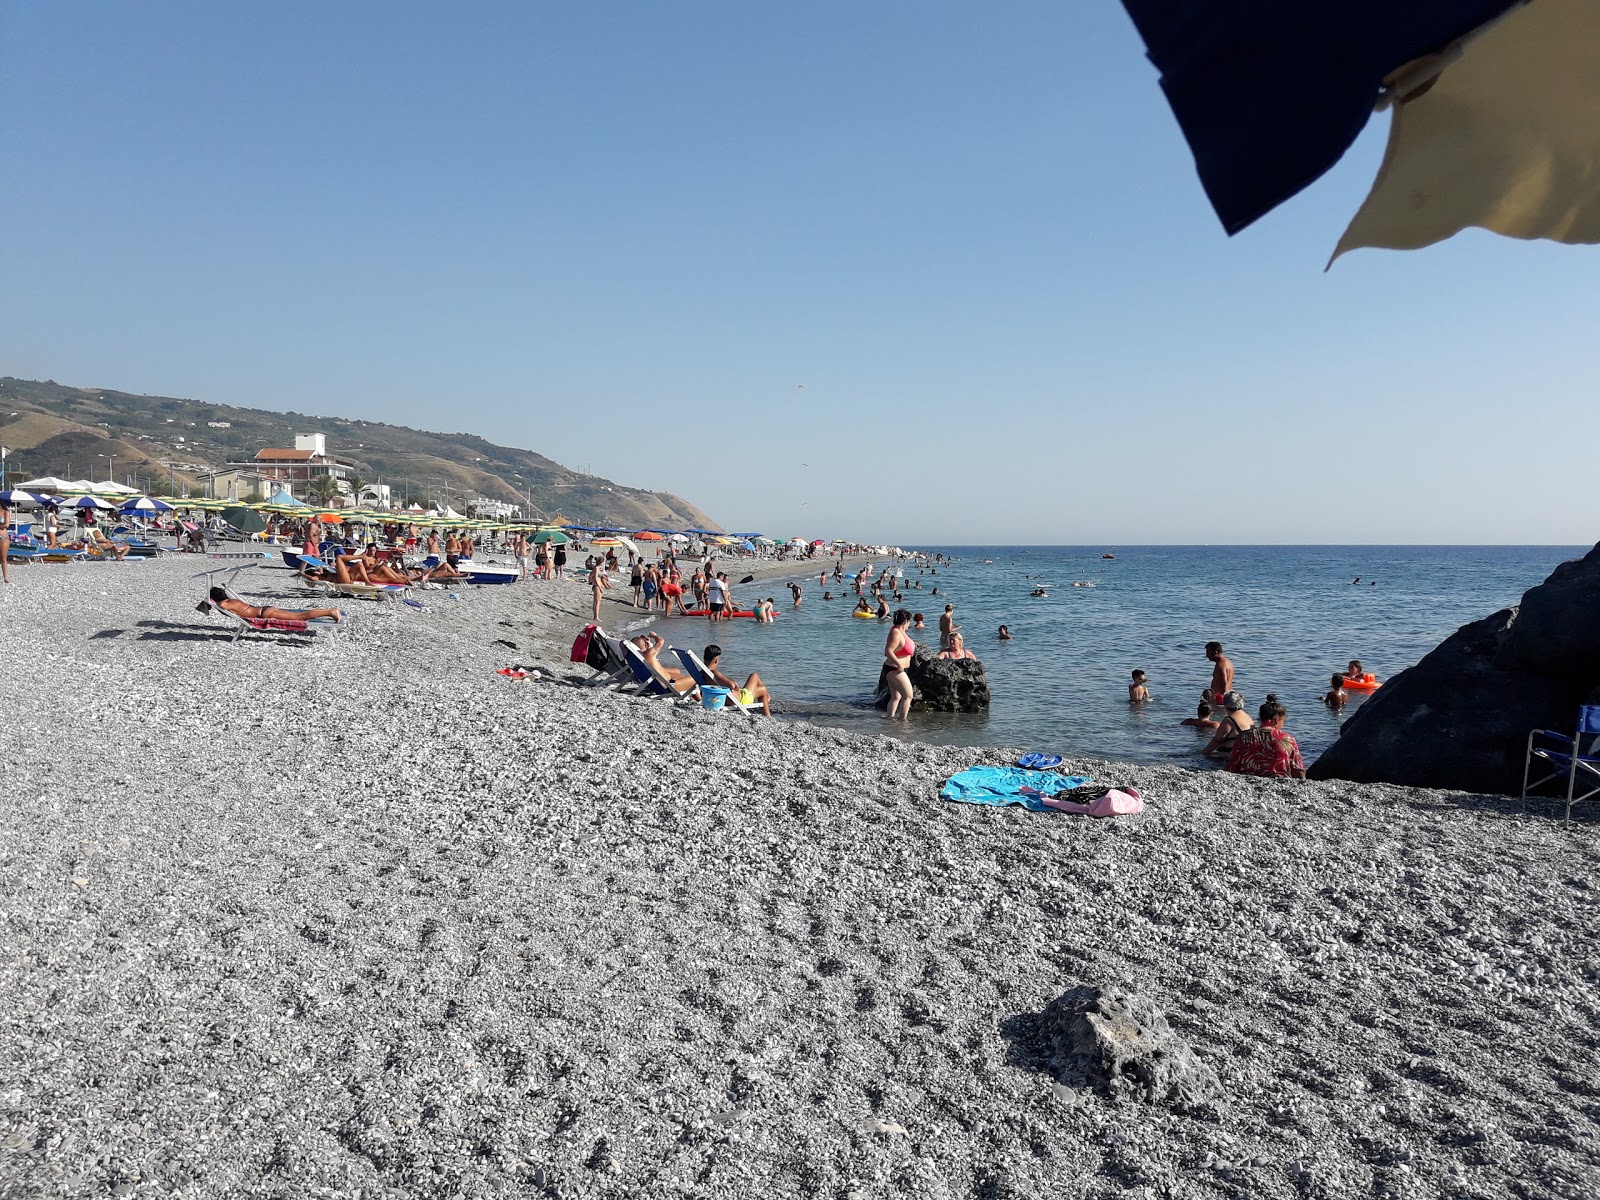 Foto von Spiaggia Amantea mit langer gerader strand